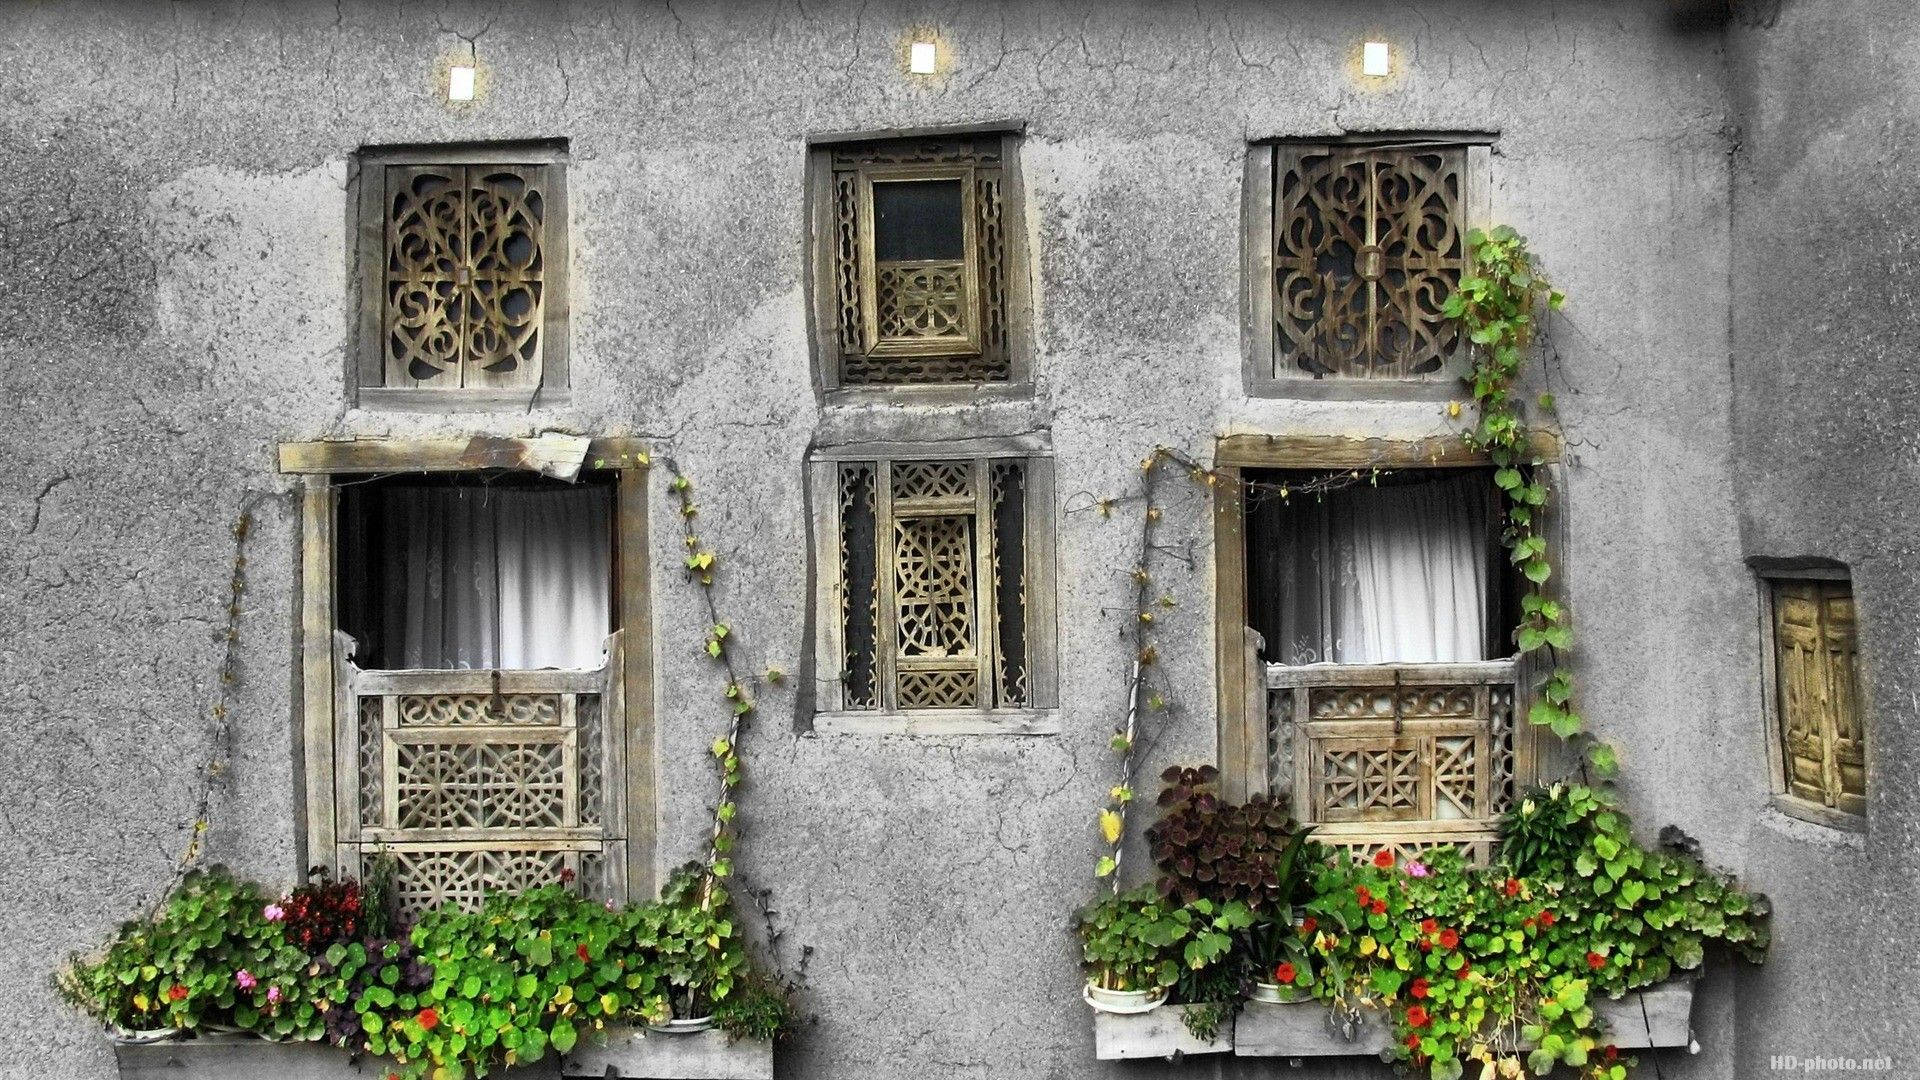 Tehran Window Designs Background